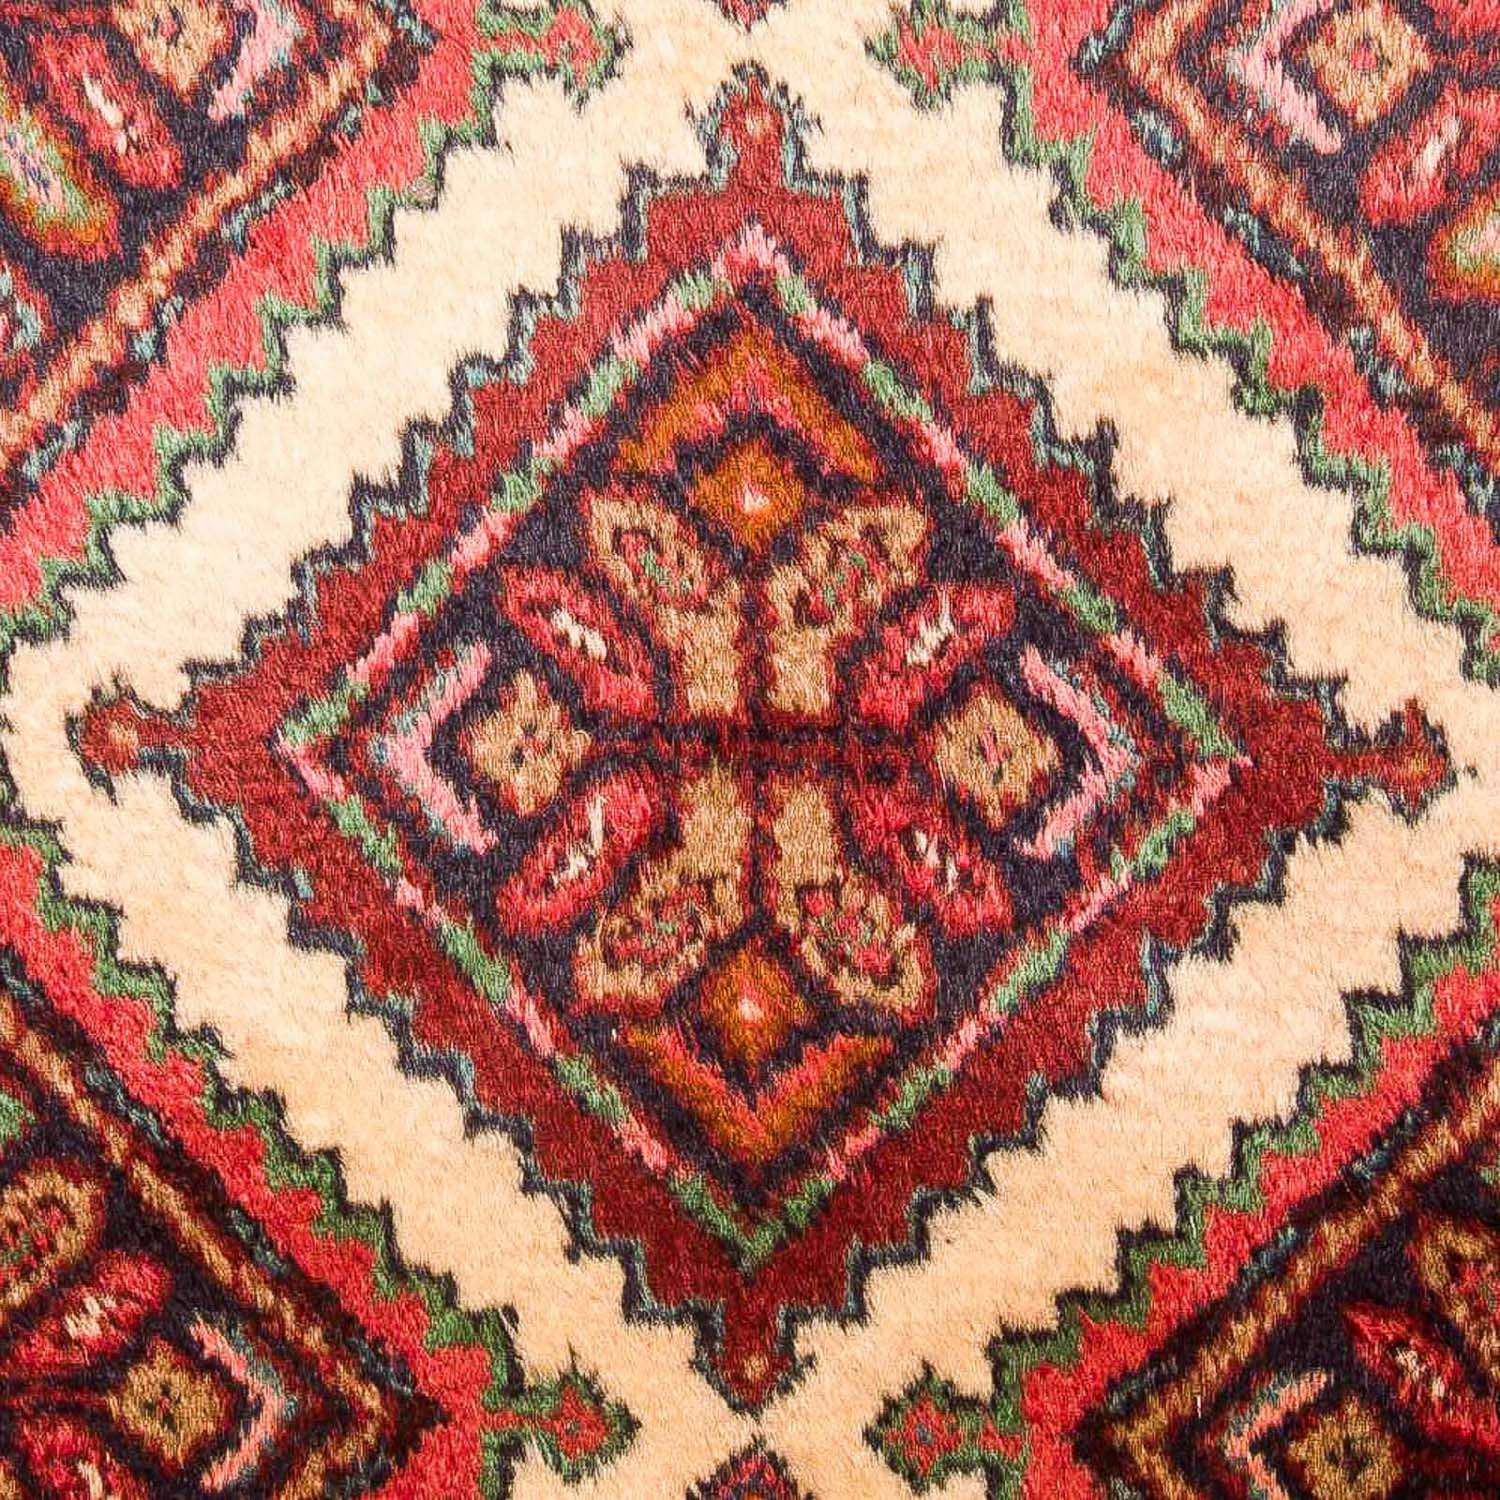 Tapis de couloir Tapis persan - Nomadic - 325 x 78 cm - marron